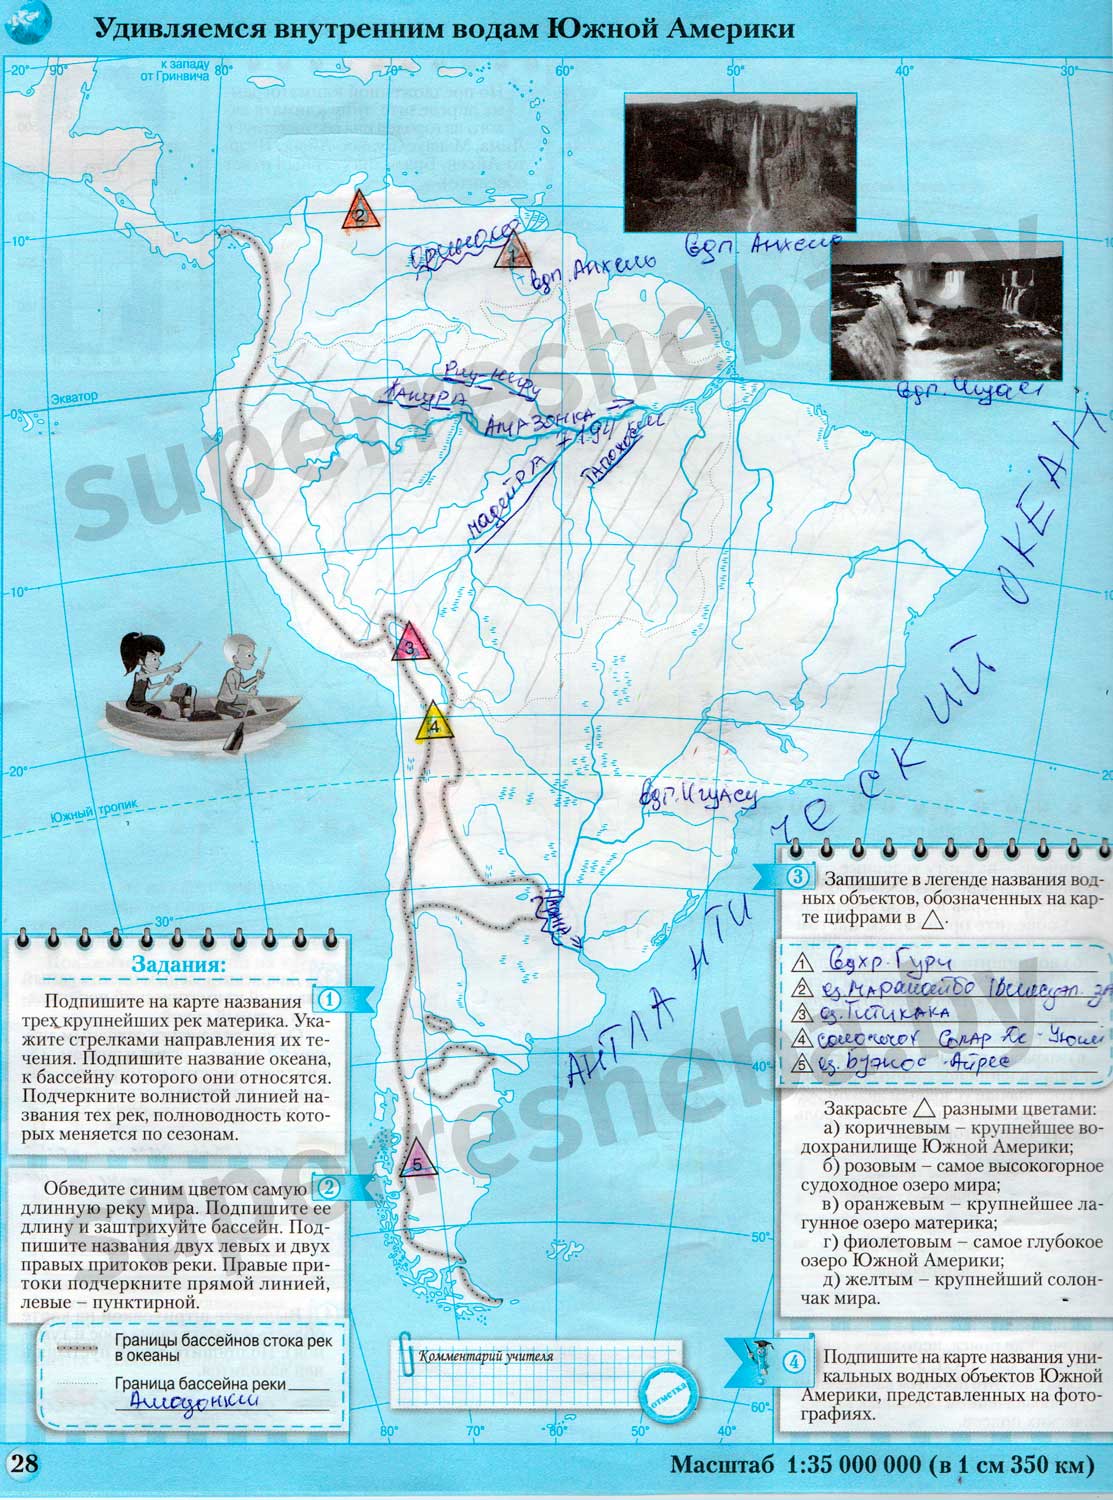 Крупнейшие реки южной америки на контурной карте. Внутренние воды Южной Америки на карте. Внутренние воды Южной Америки. Внутренние воды Южной Америки на контурной карте. Водные объекты Южной Америки на карте.